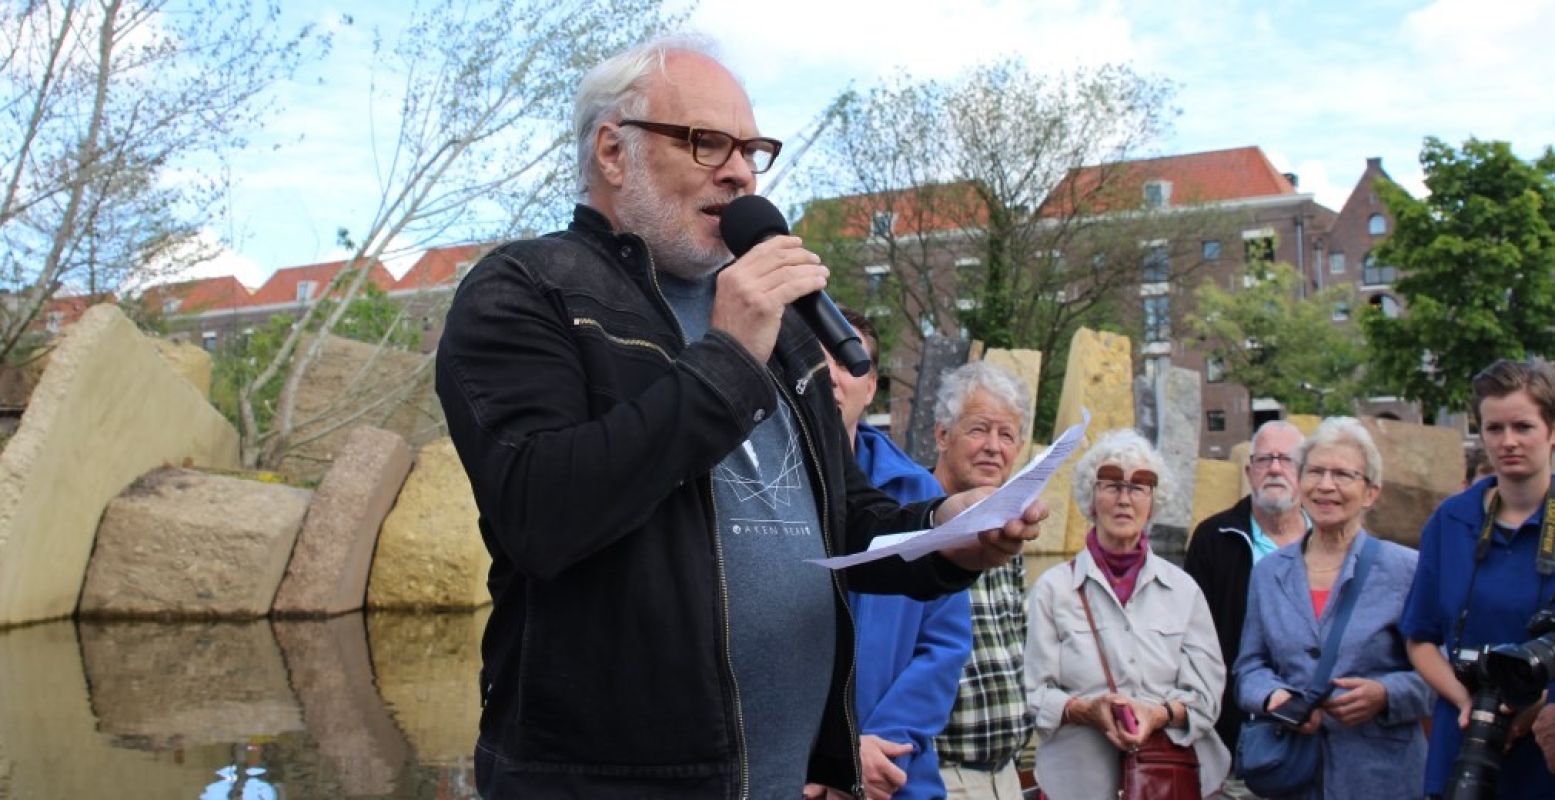 Nico Dijkshoorn aan het woord over hoe hij als klein jongetje al met zijn opa naar ARTIS ging. Foto: Redactie DagjeWeg.NL